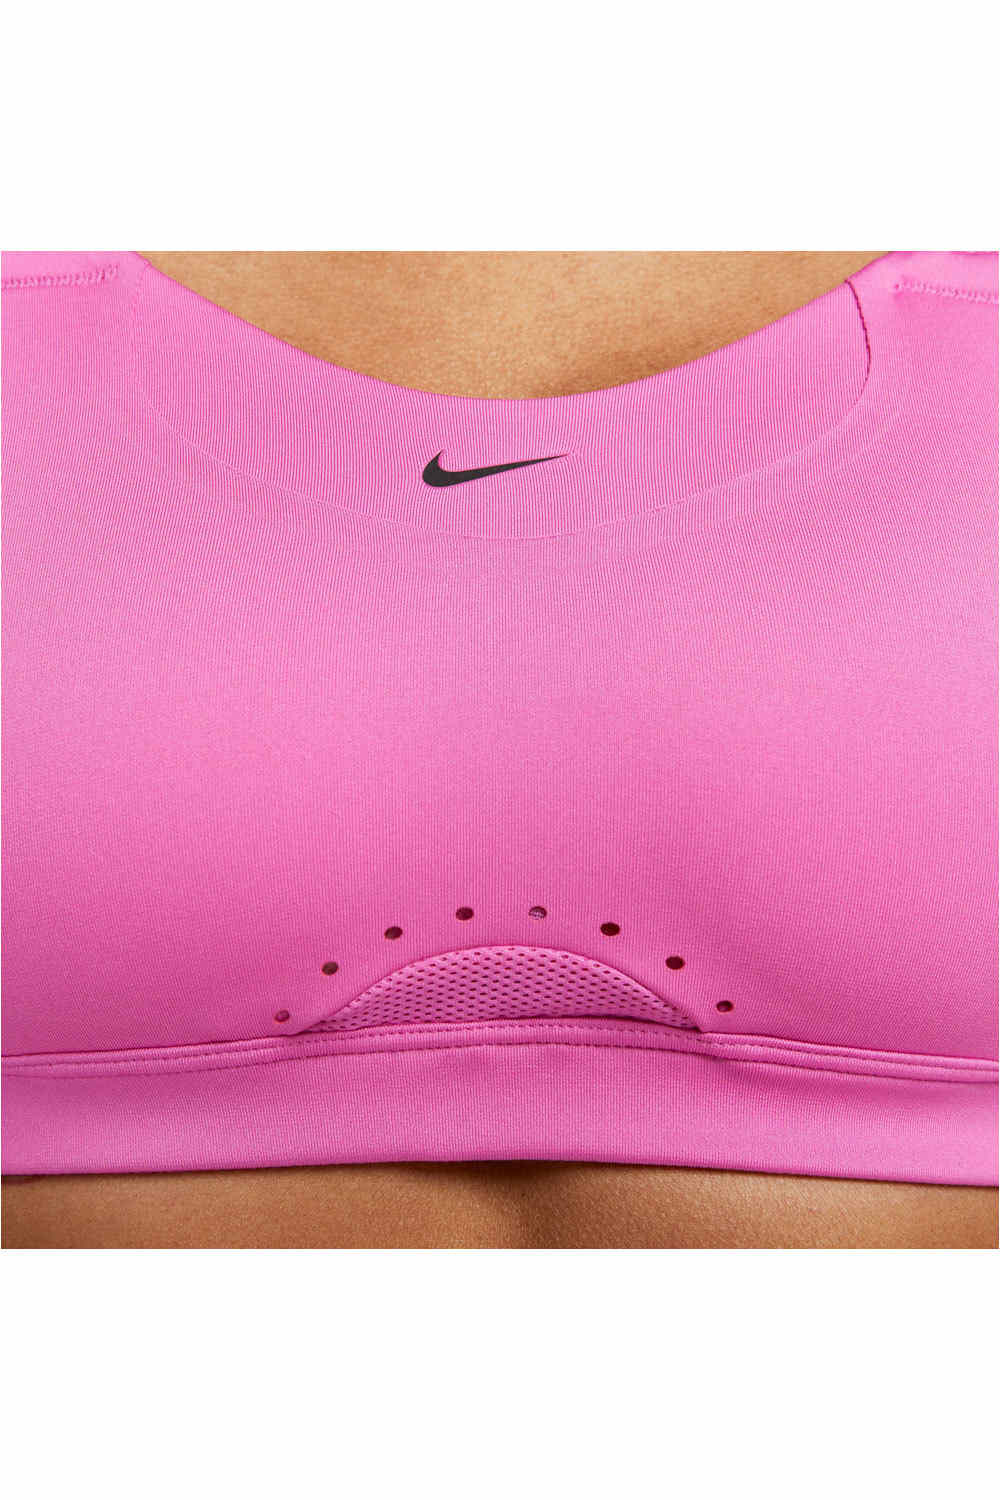 Nike sujetadores deportivos W NK DF ALPHA BRA vista detalle